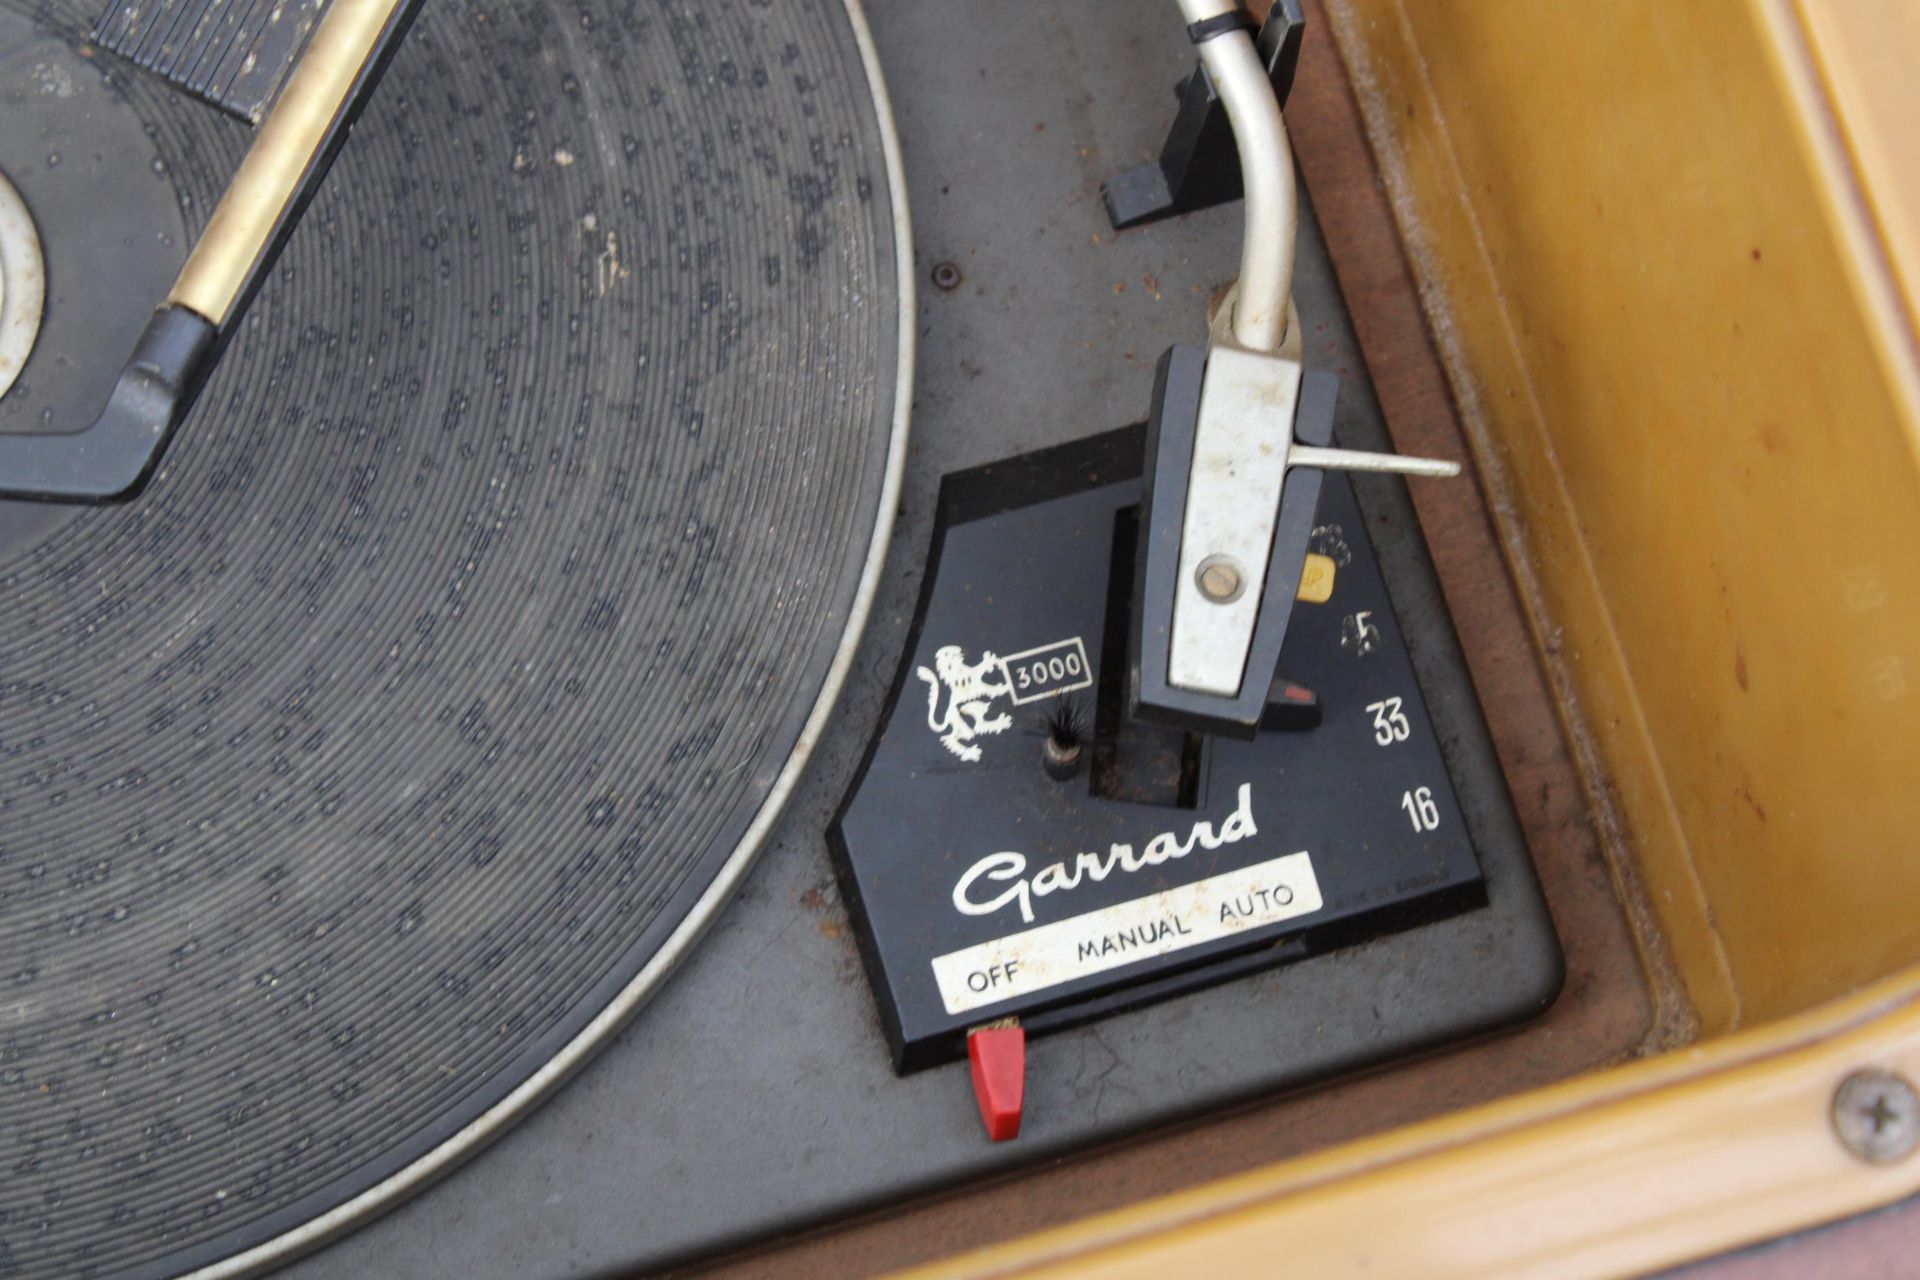 A VINTAGE MID CENTURY REGENTONE RADIOGRAM WITH A GARRARD DECK - Image 3 of 6